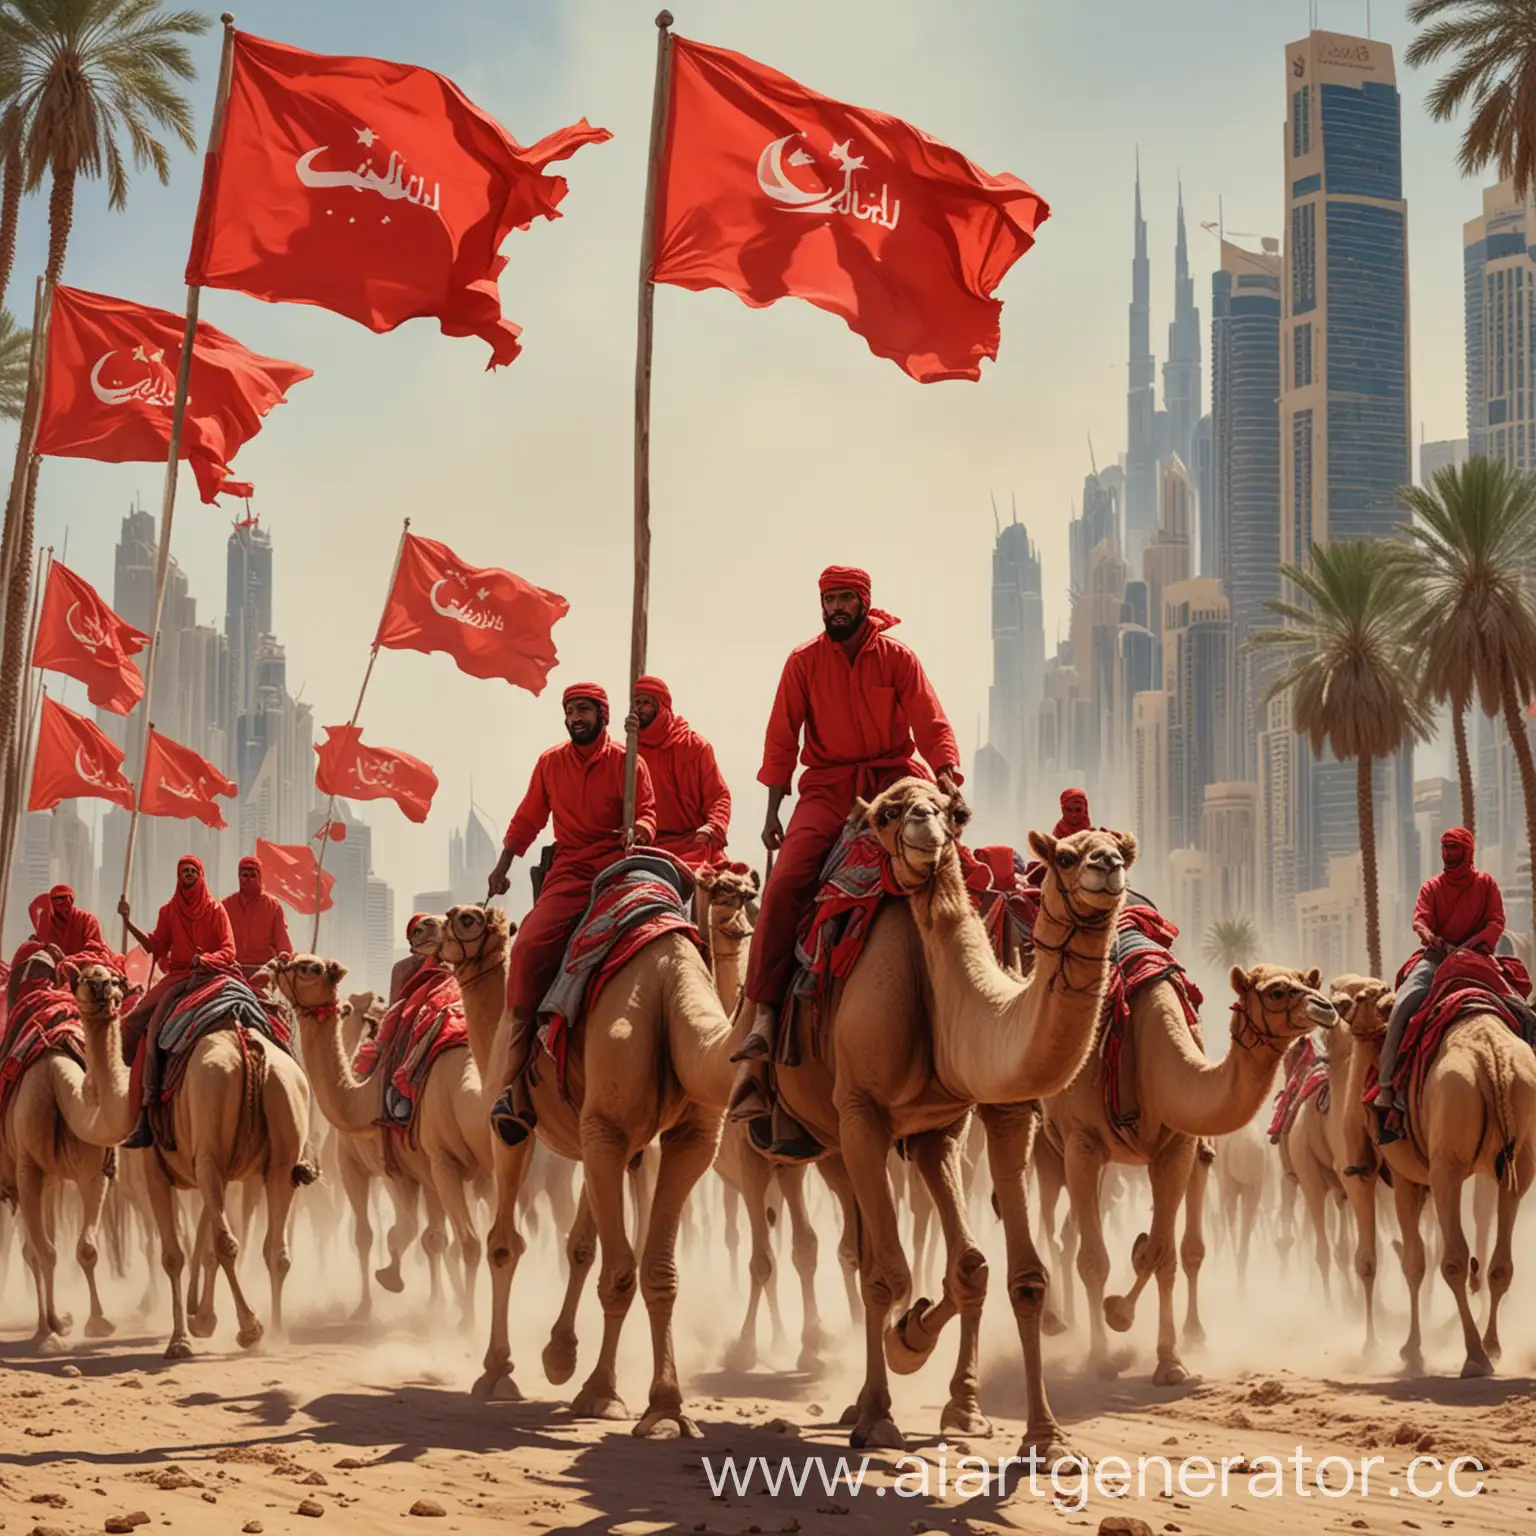 Communist-Revolutionaries-on-Camelback-Socialist-Uprising-in-Dubai